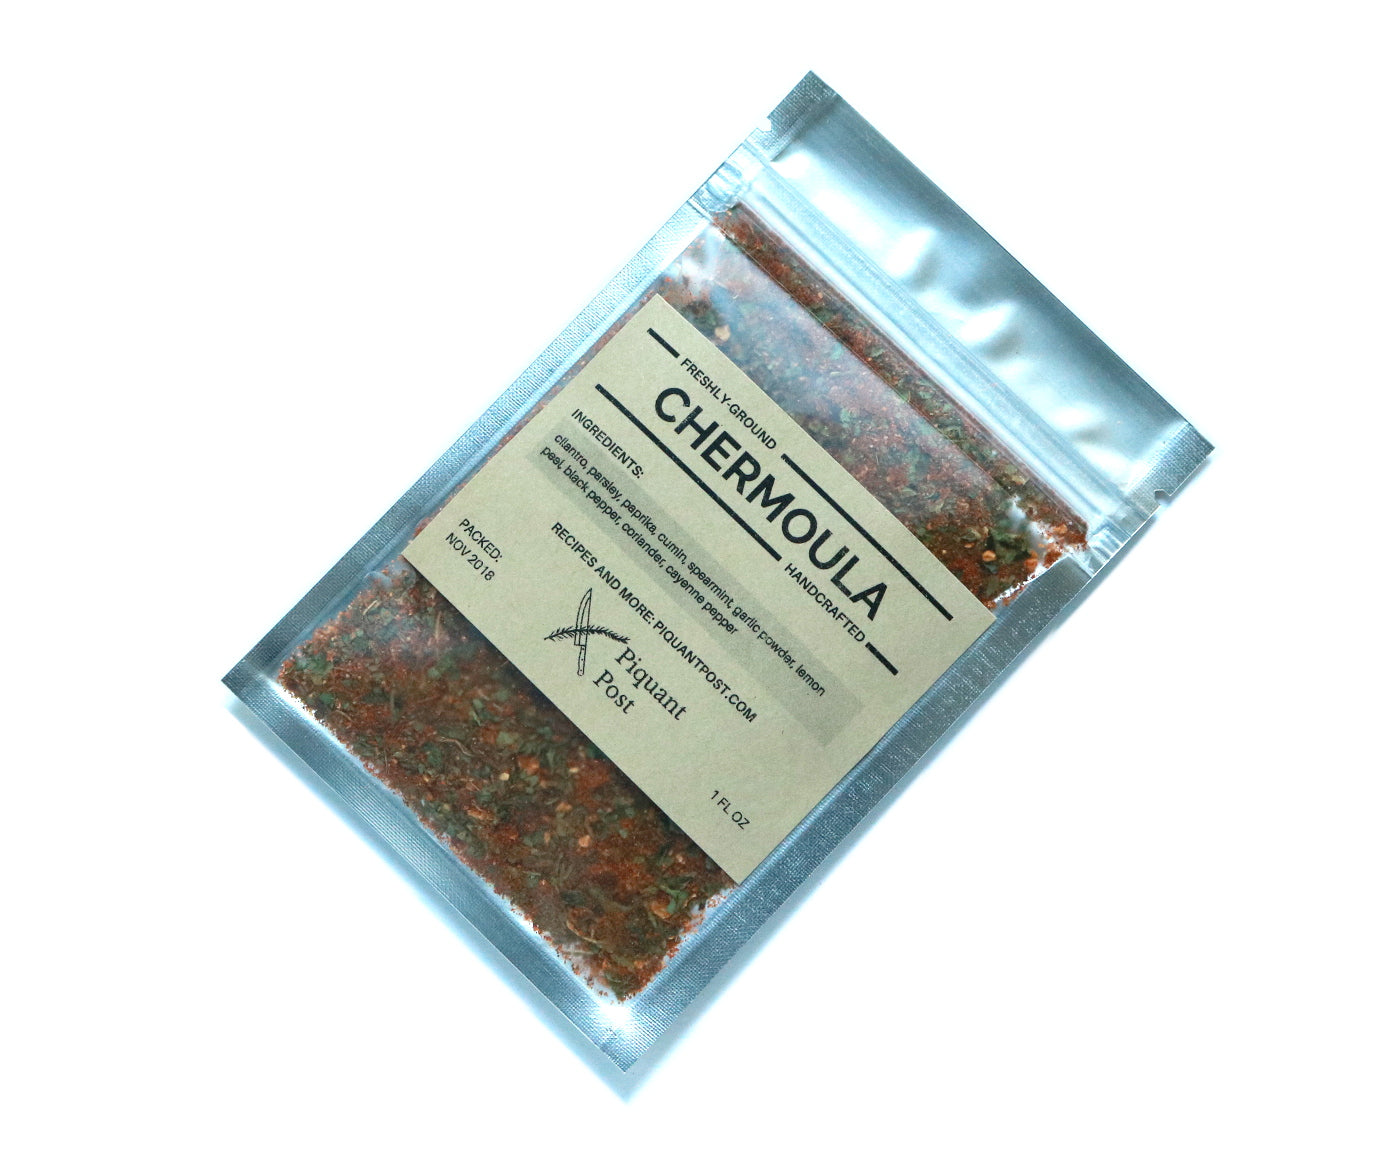 Chermoula Spice Blend (Dry Rub)